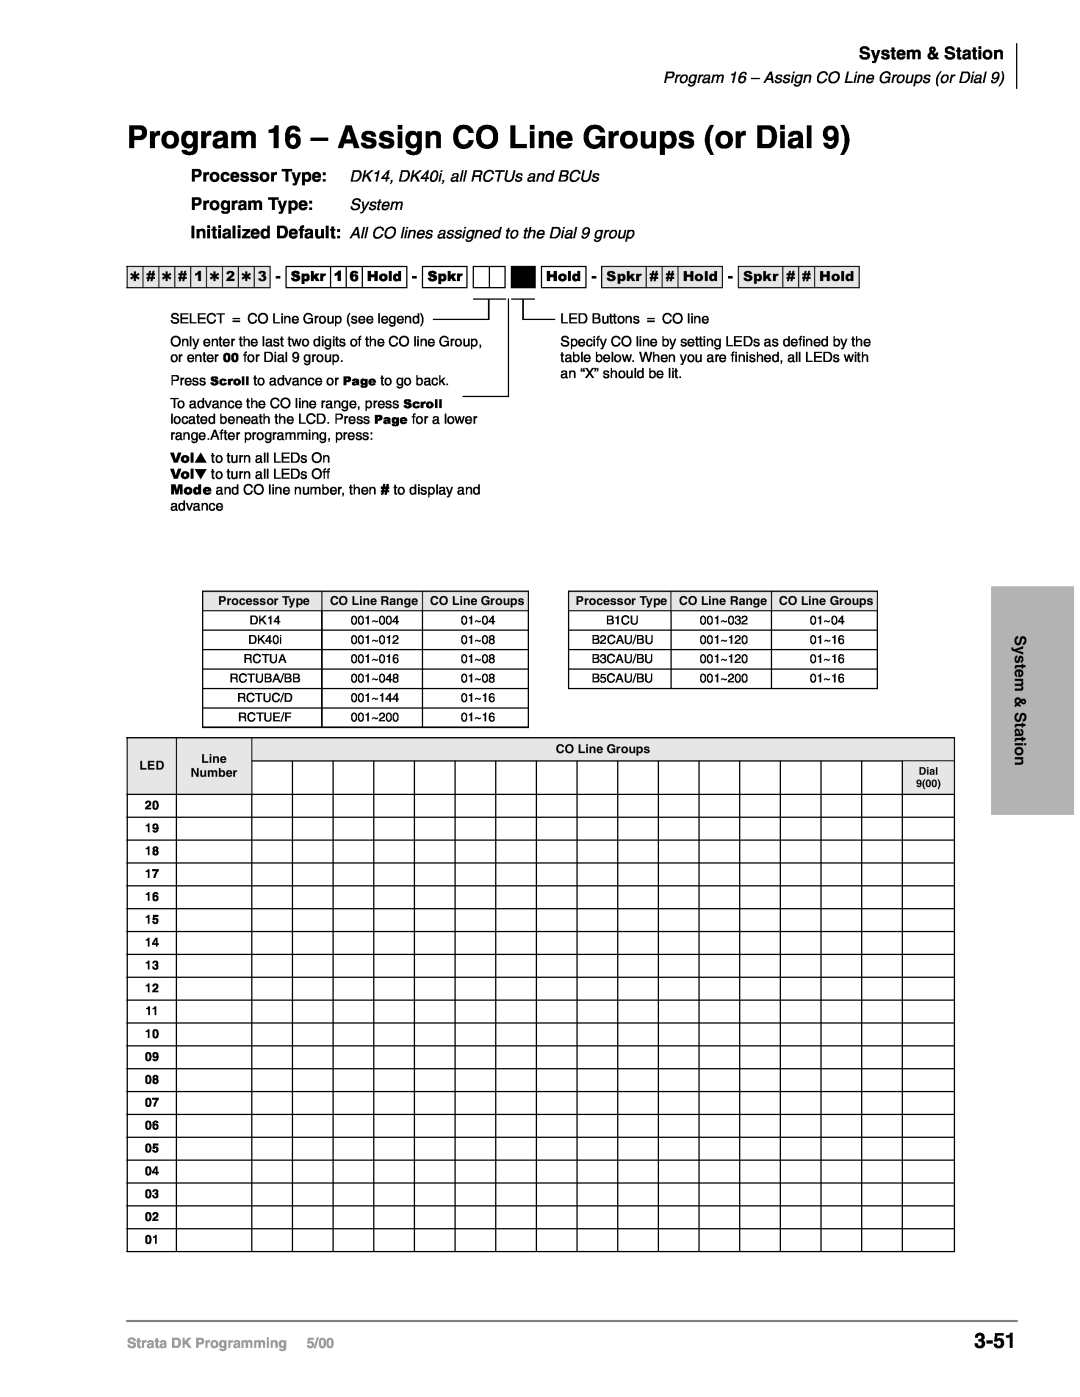 Toshiba DK424I, dk14, DK40I manual Program 16 – Assign CO Line Groups or Dial, 3-51, System & Station, Program Type: System 